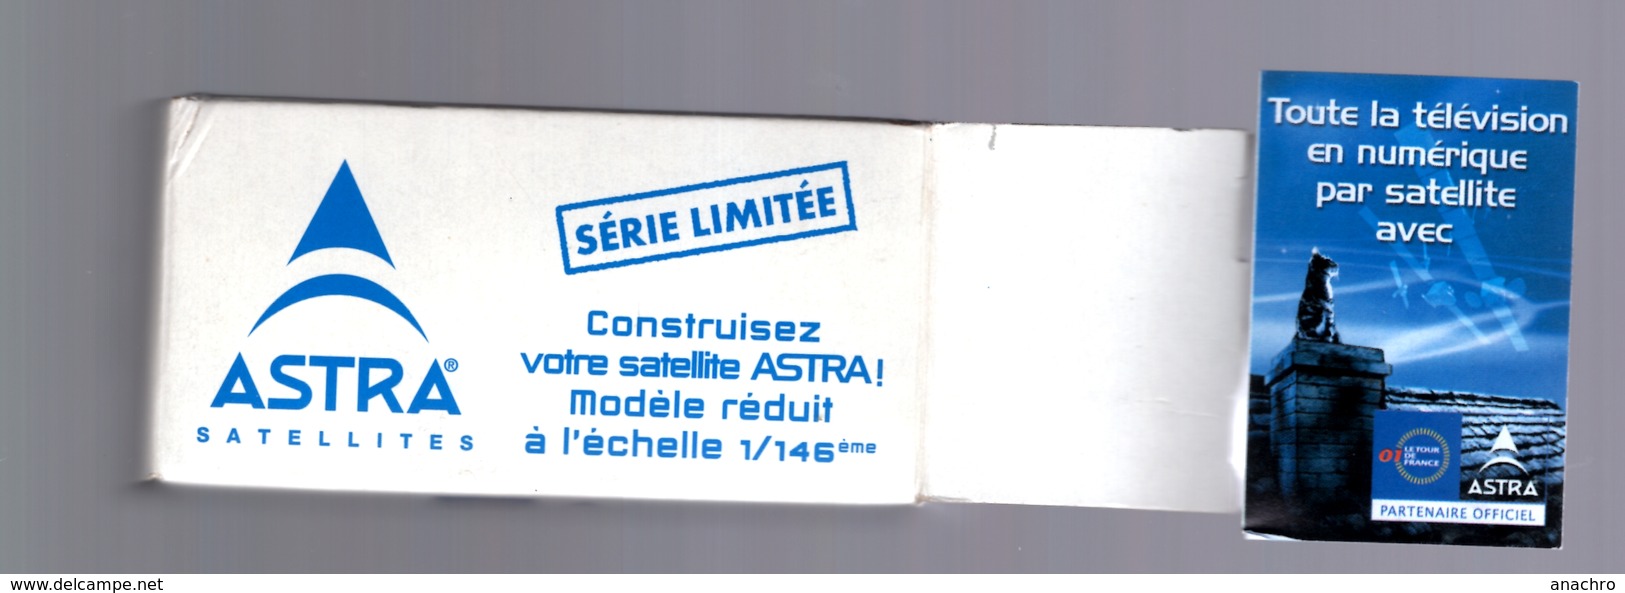 ASTRA SATELLITE Série limitée 2001 modèle réduit à monter